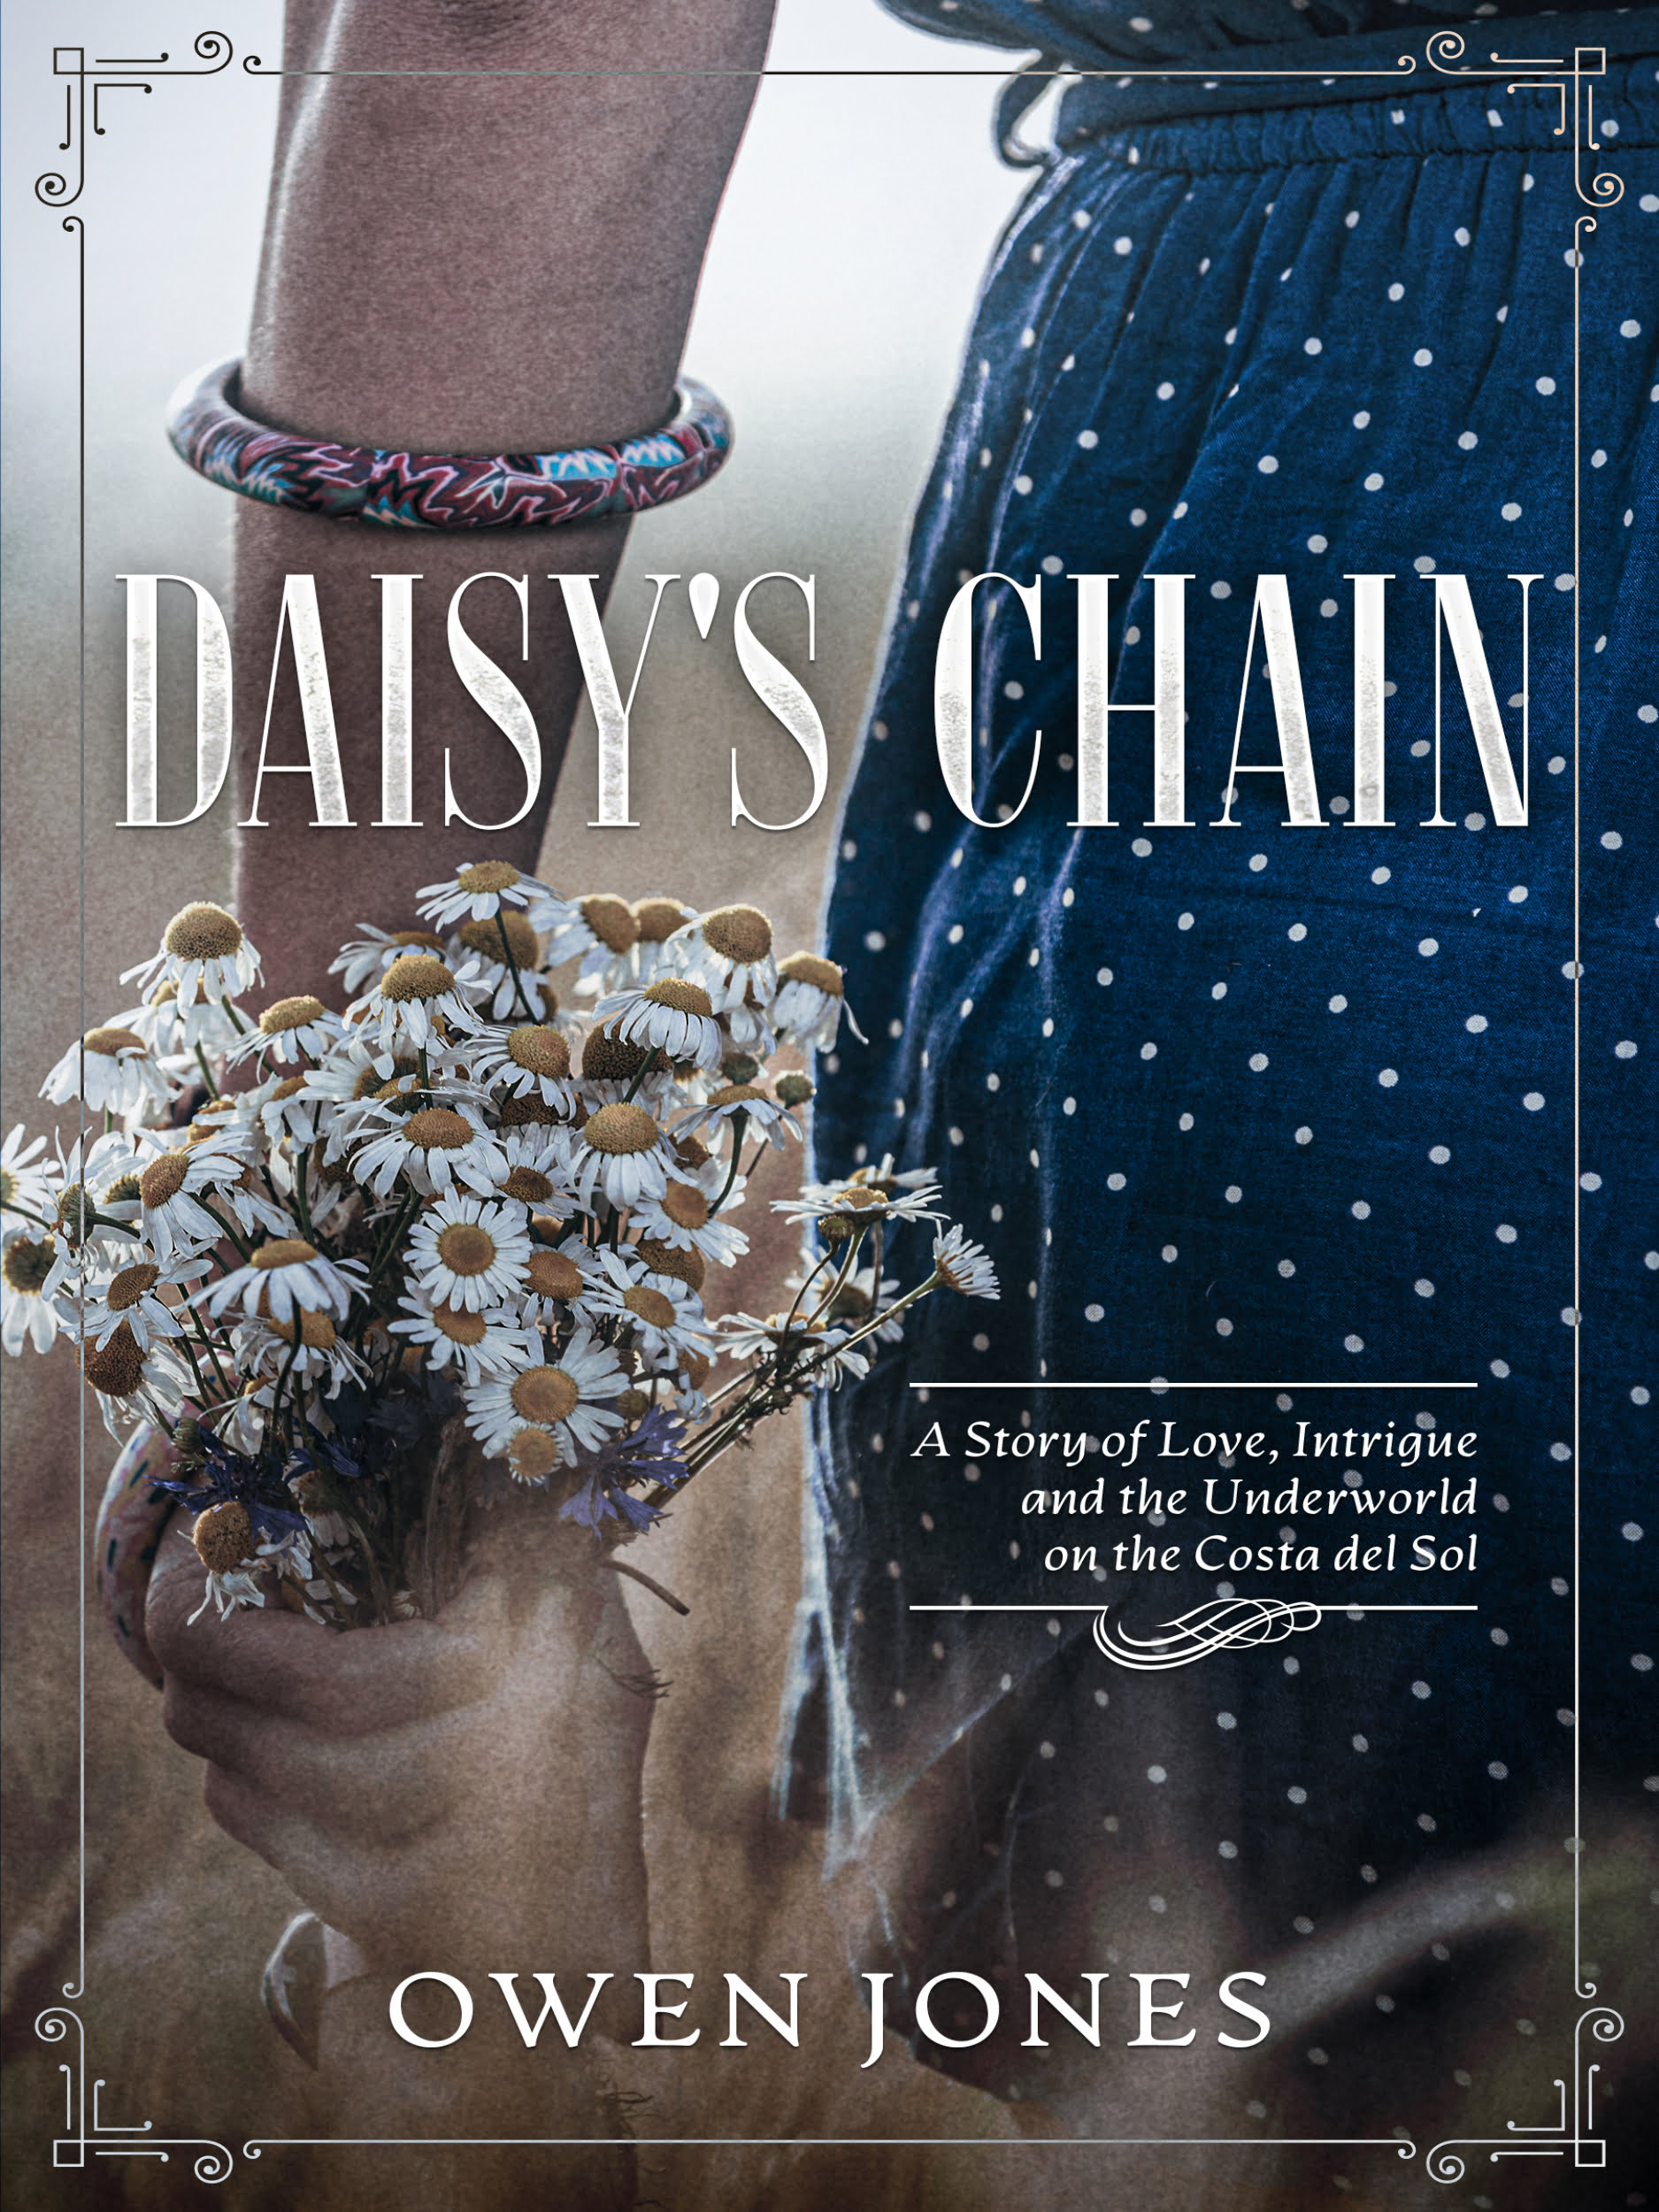 Daisy's Chain by Owen Jones